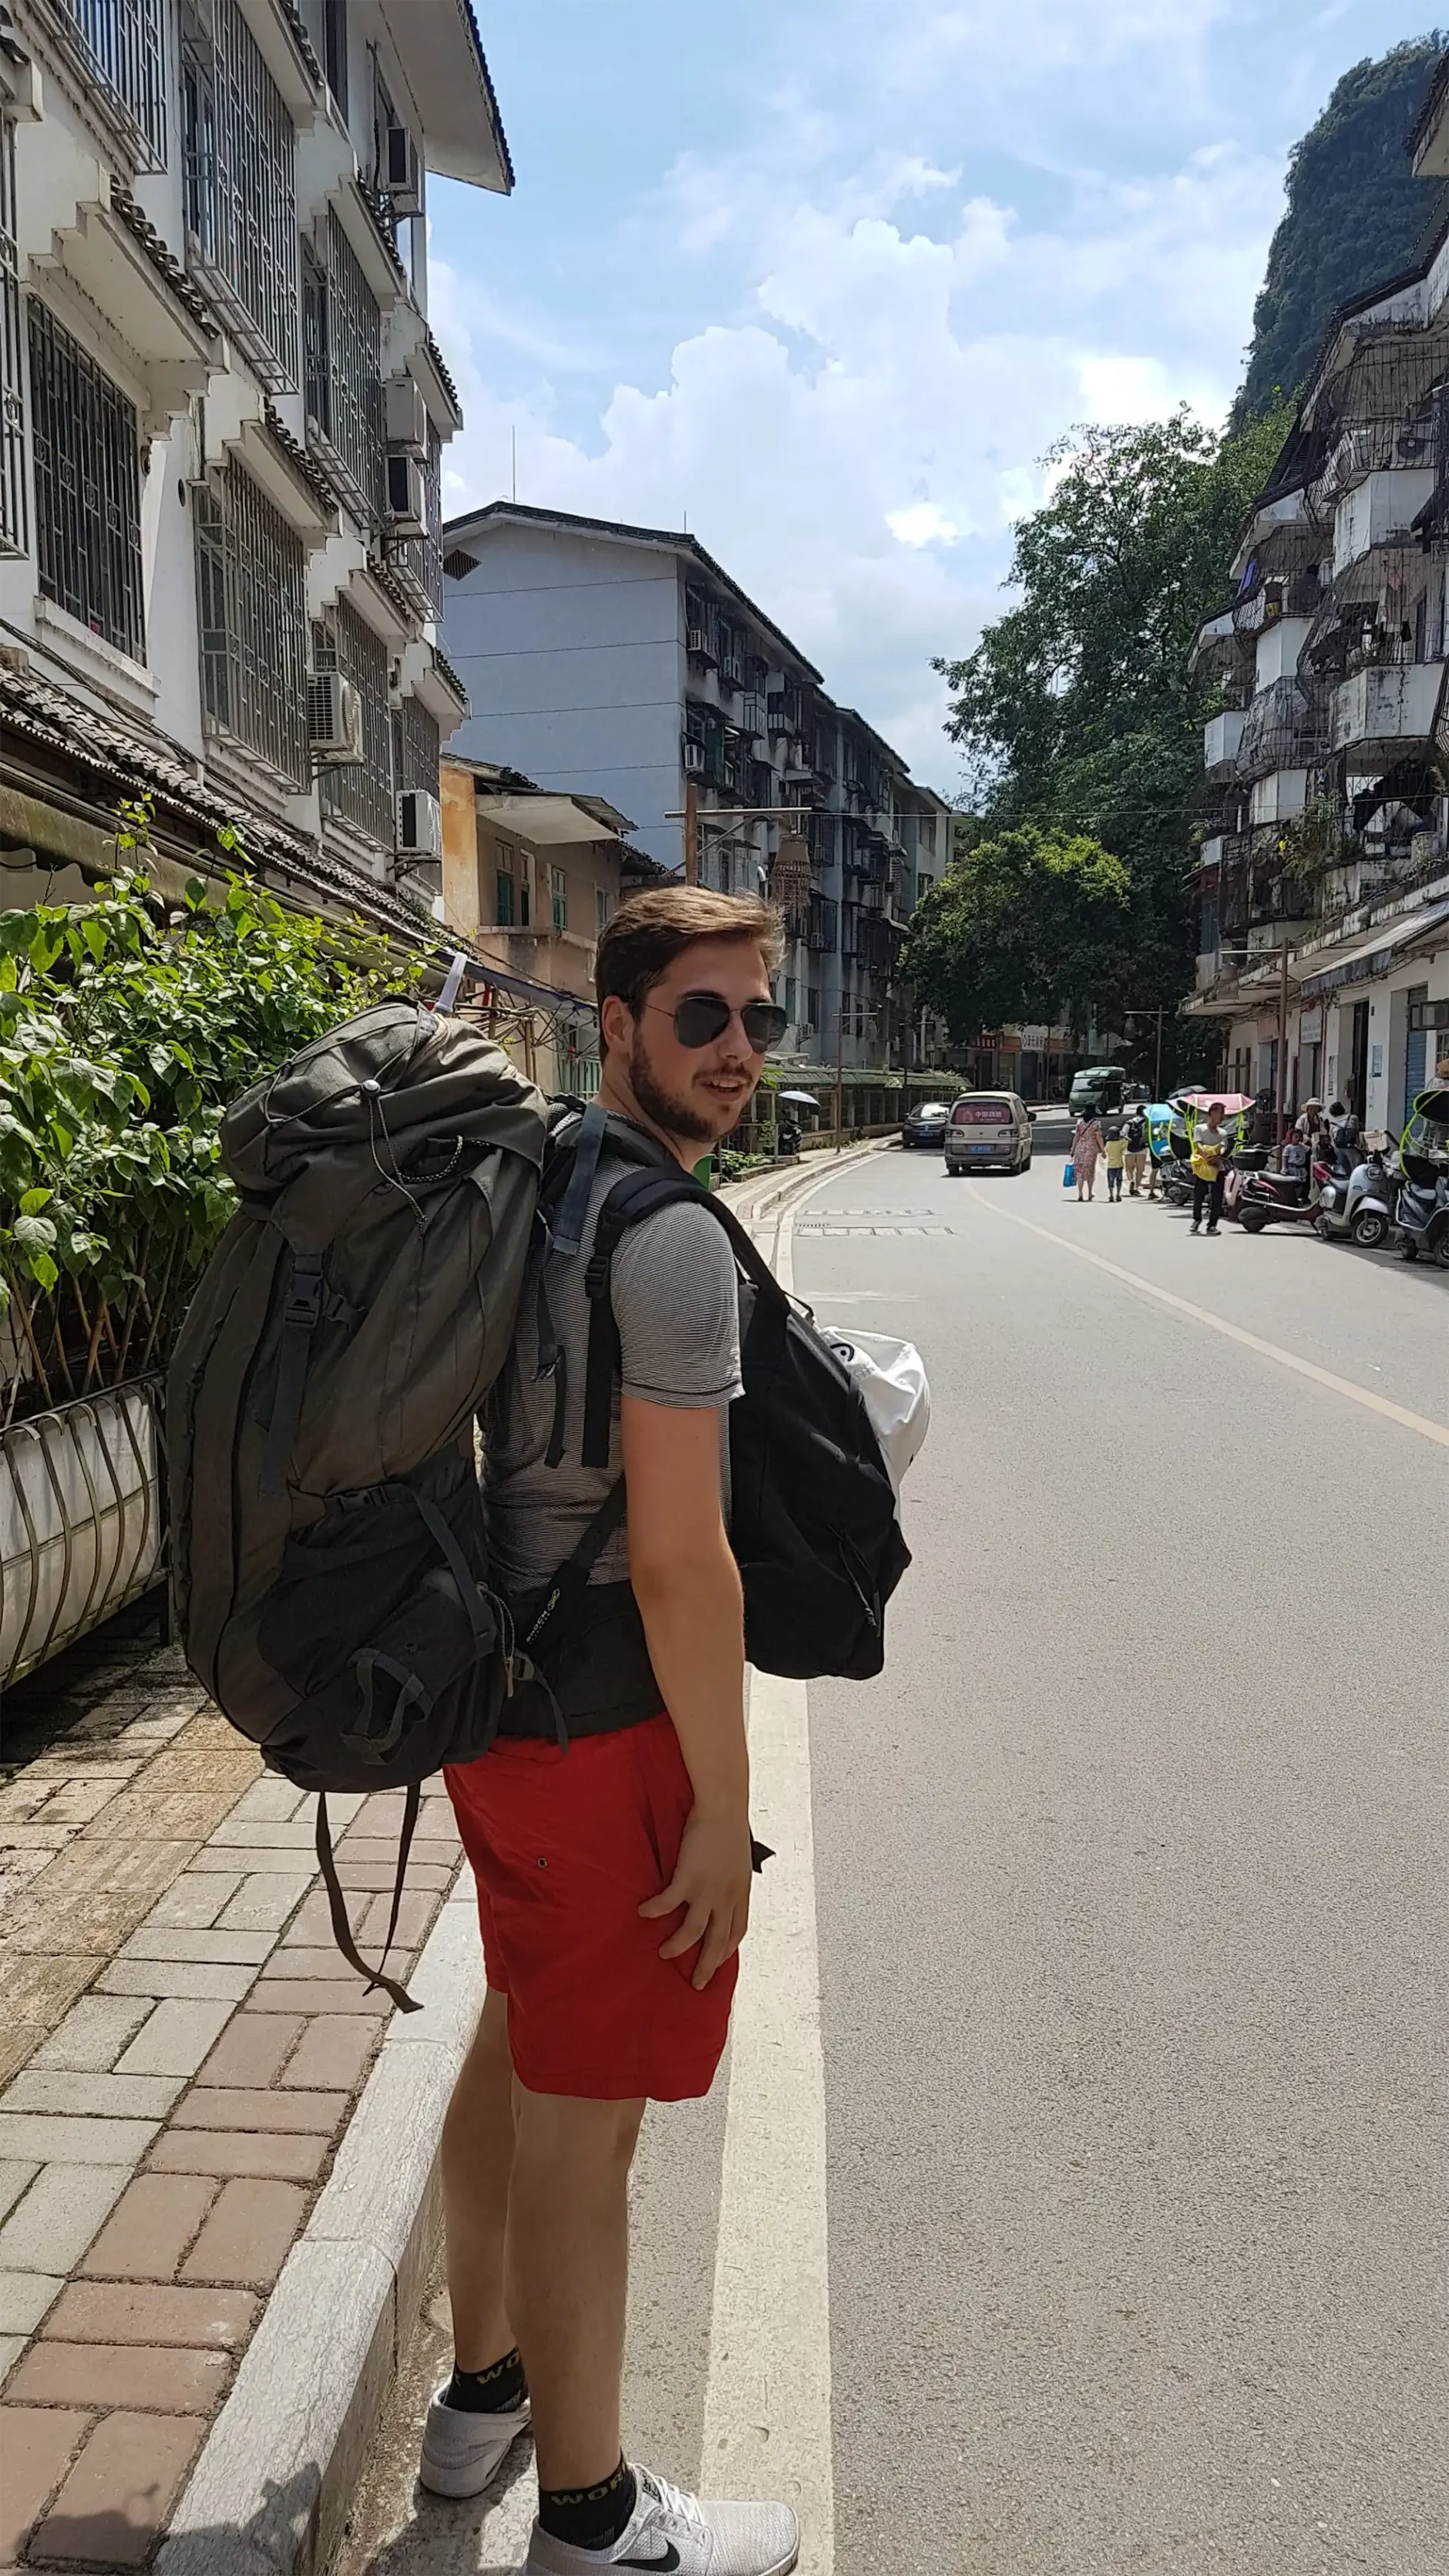 Piotr van Rijssel with backpacks on the street.